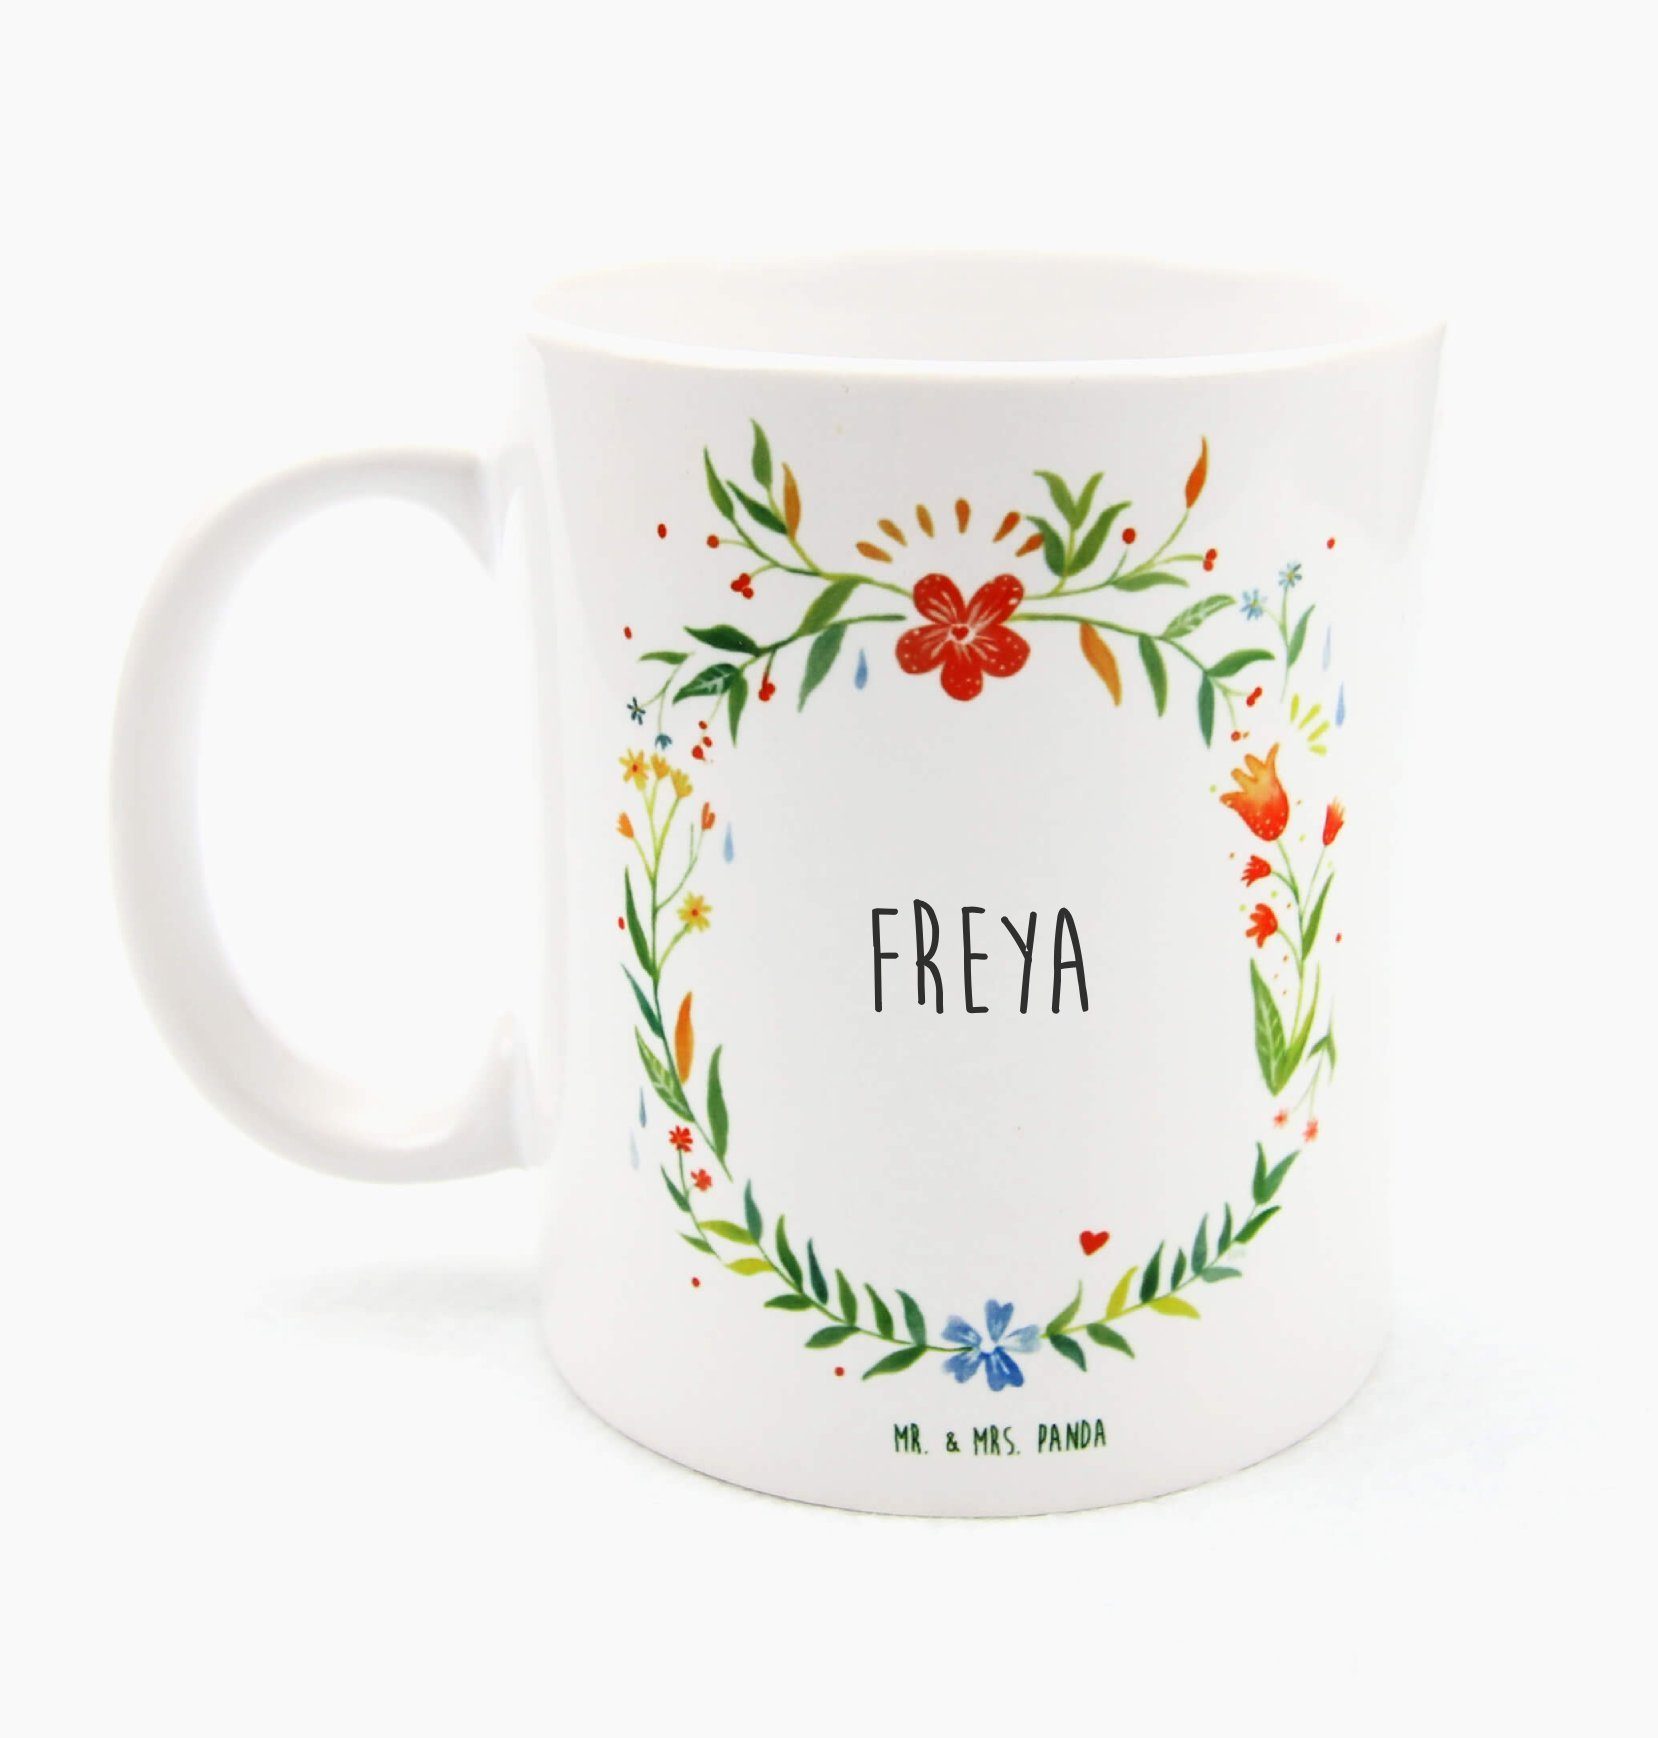 Freya Keramik Teebecher, Tasse Tasse, Geschenk, - & Panda Mrs. Geschenk Mr. Tasse, Teetasse, Becher,